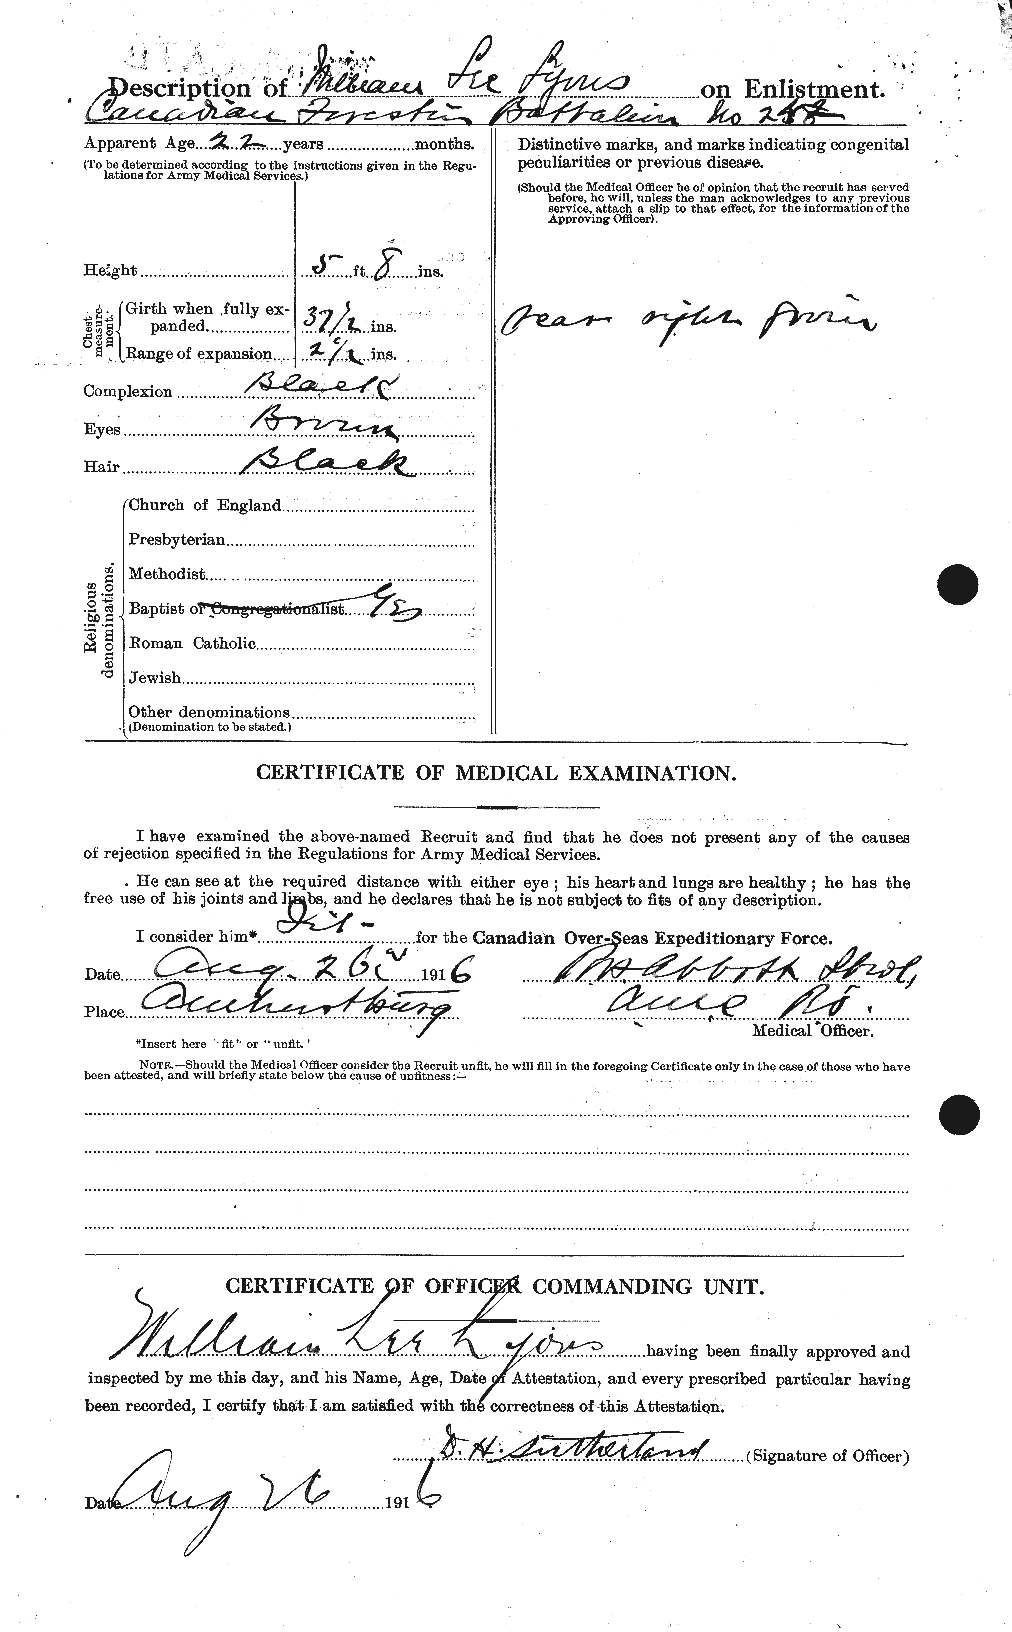 Dossiers du Personnel de la Première Guerre mondiale - CEC 474907b